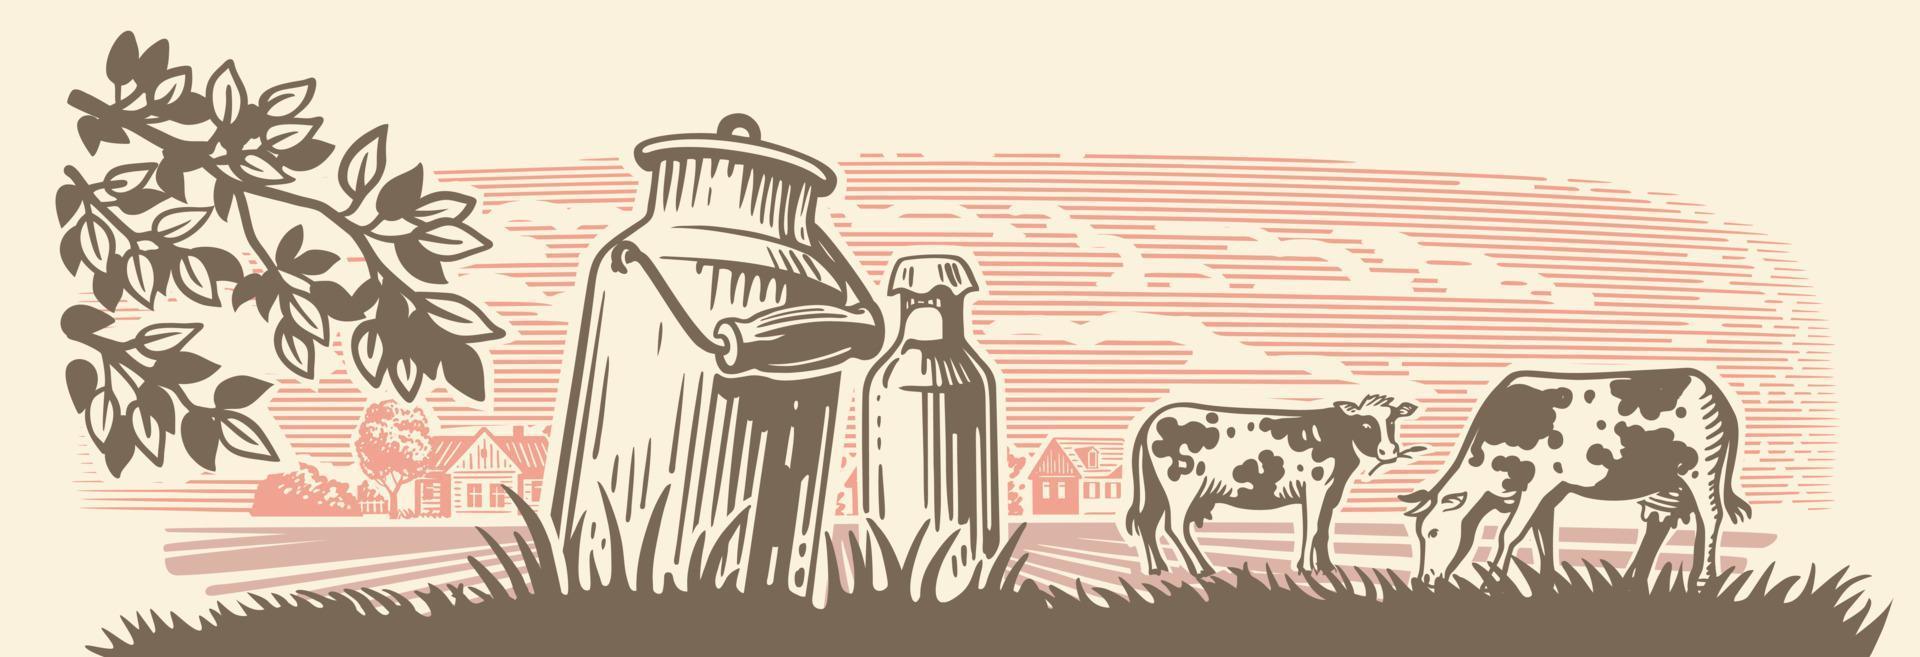 vacas en el vector del prado del marco. bosquejo dibujado a mano ganado